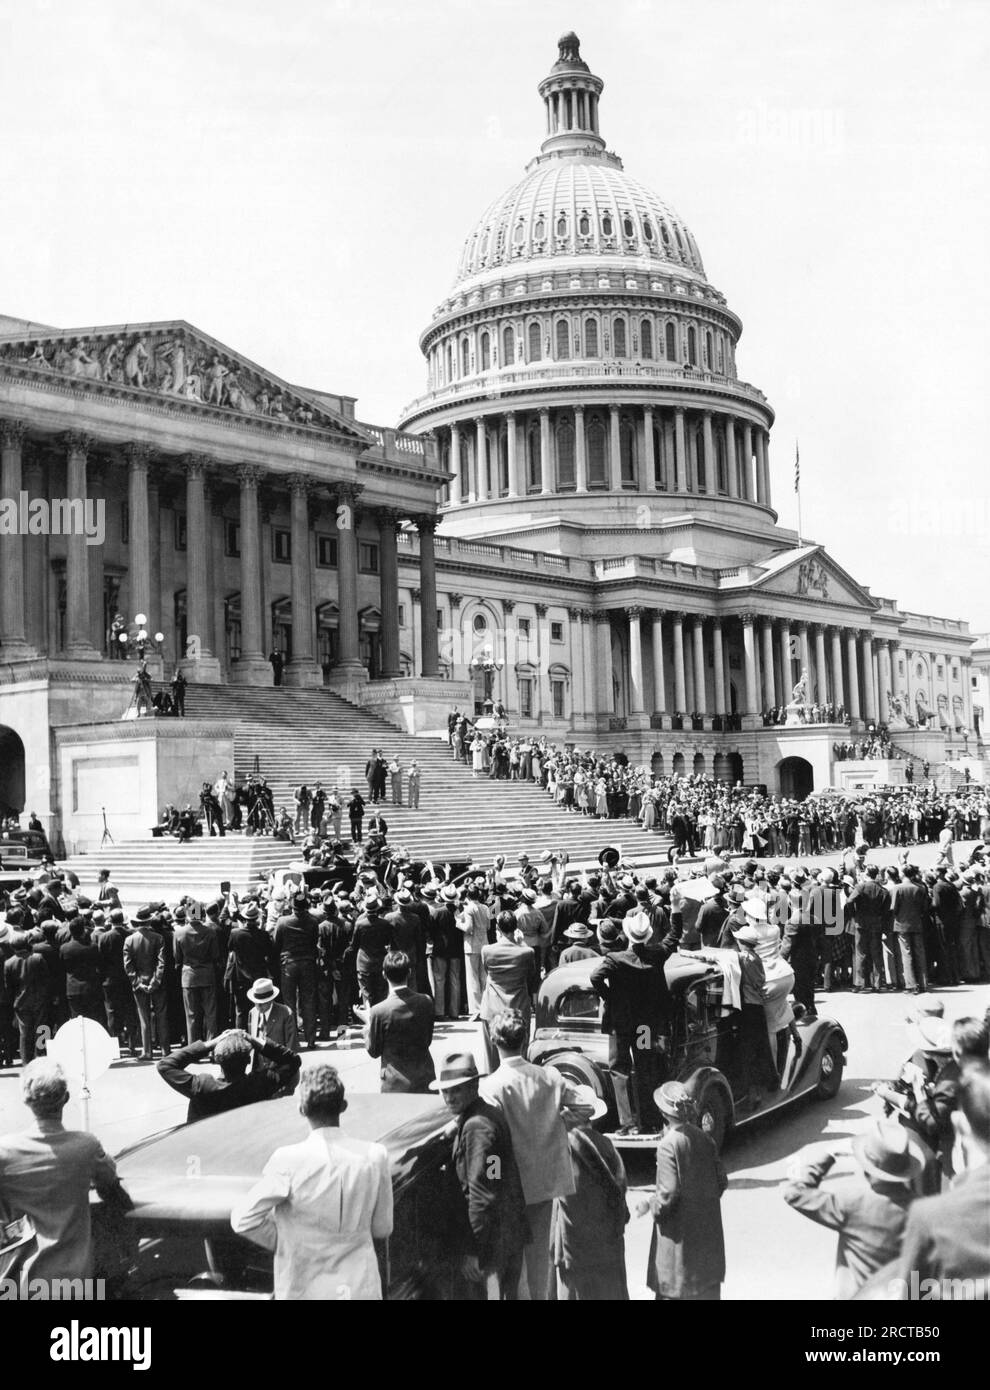 Washington, D.C. Am 22. Mai 1935 versammeln sich vor dem Kapitol Menschenmassen, während sie Präsident Roosevelt anfeuern, als er in seinem Auto wegfuhr, nachdem er persönlich vor einer gemeinsamen Kongresssitzung gegen das Soldiers Bonus Bill protestiert hatte. Stockfoto